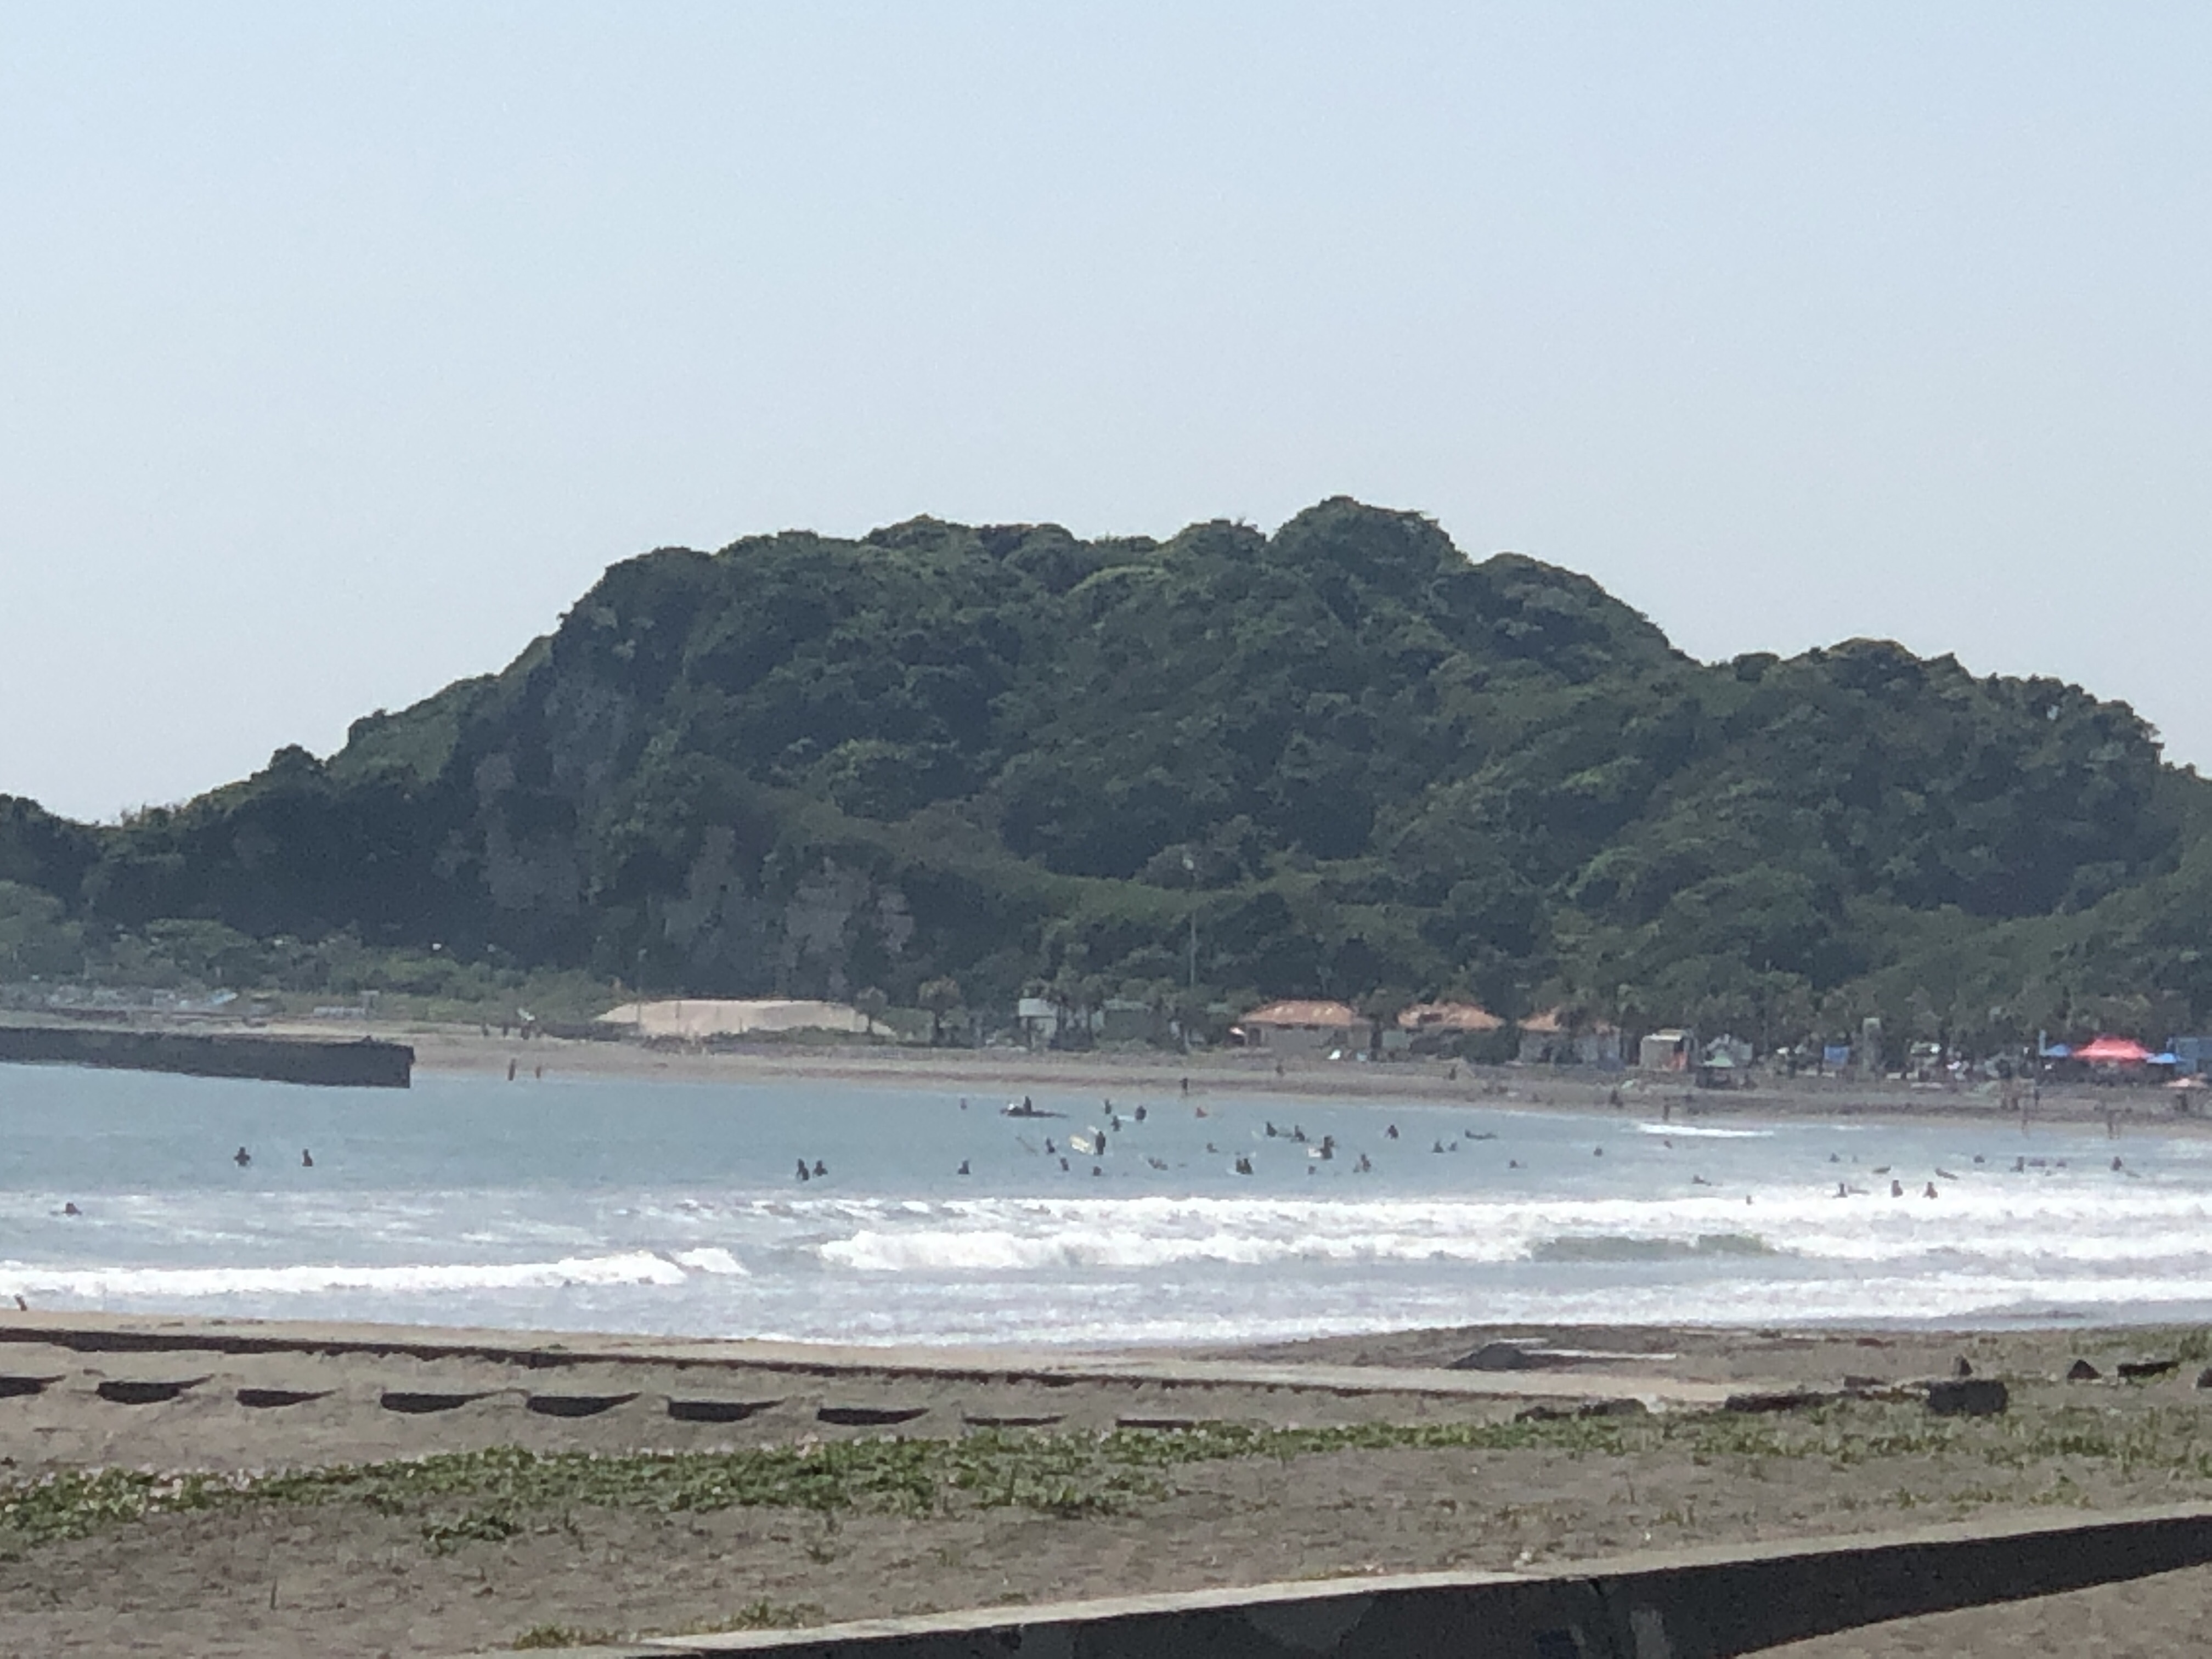 【2019.5.27】北海道東部は今日も猛暑に警戒必要、南東うねりはサイズダウン傾向